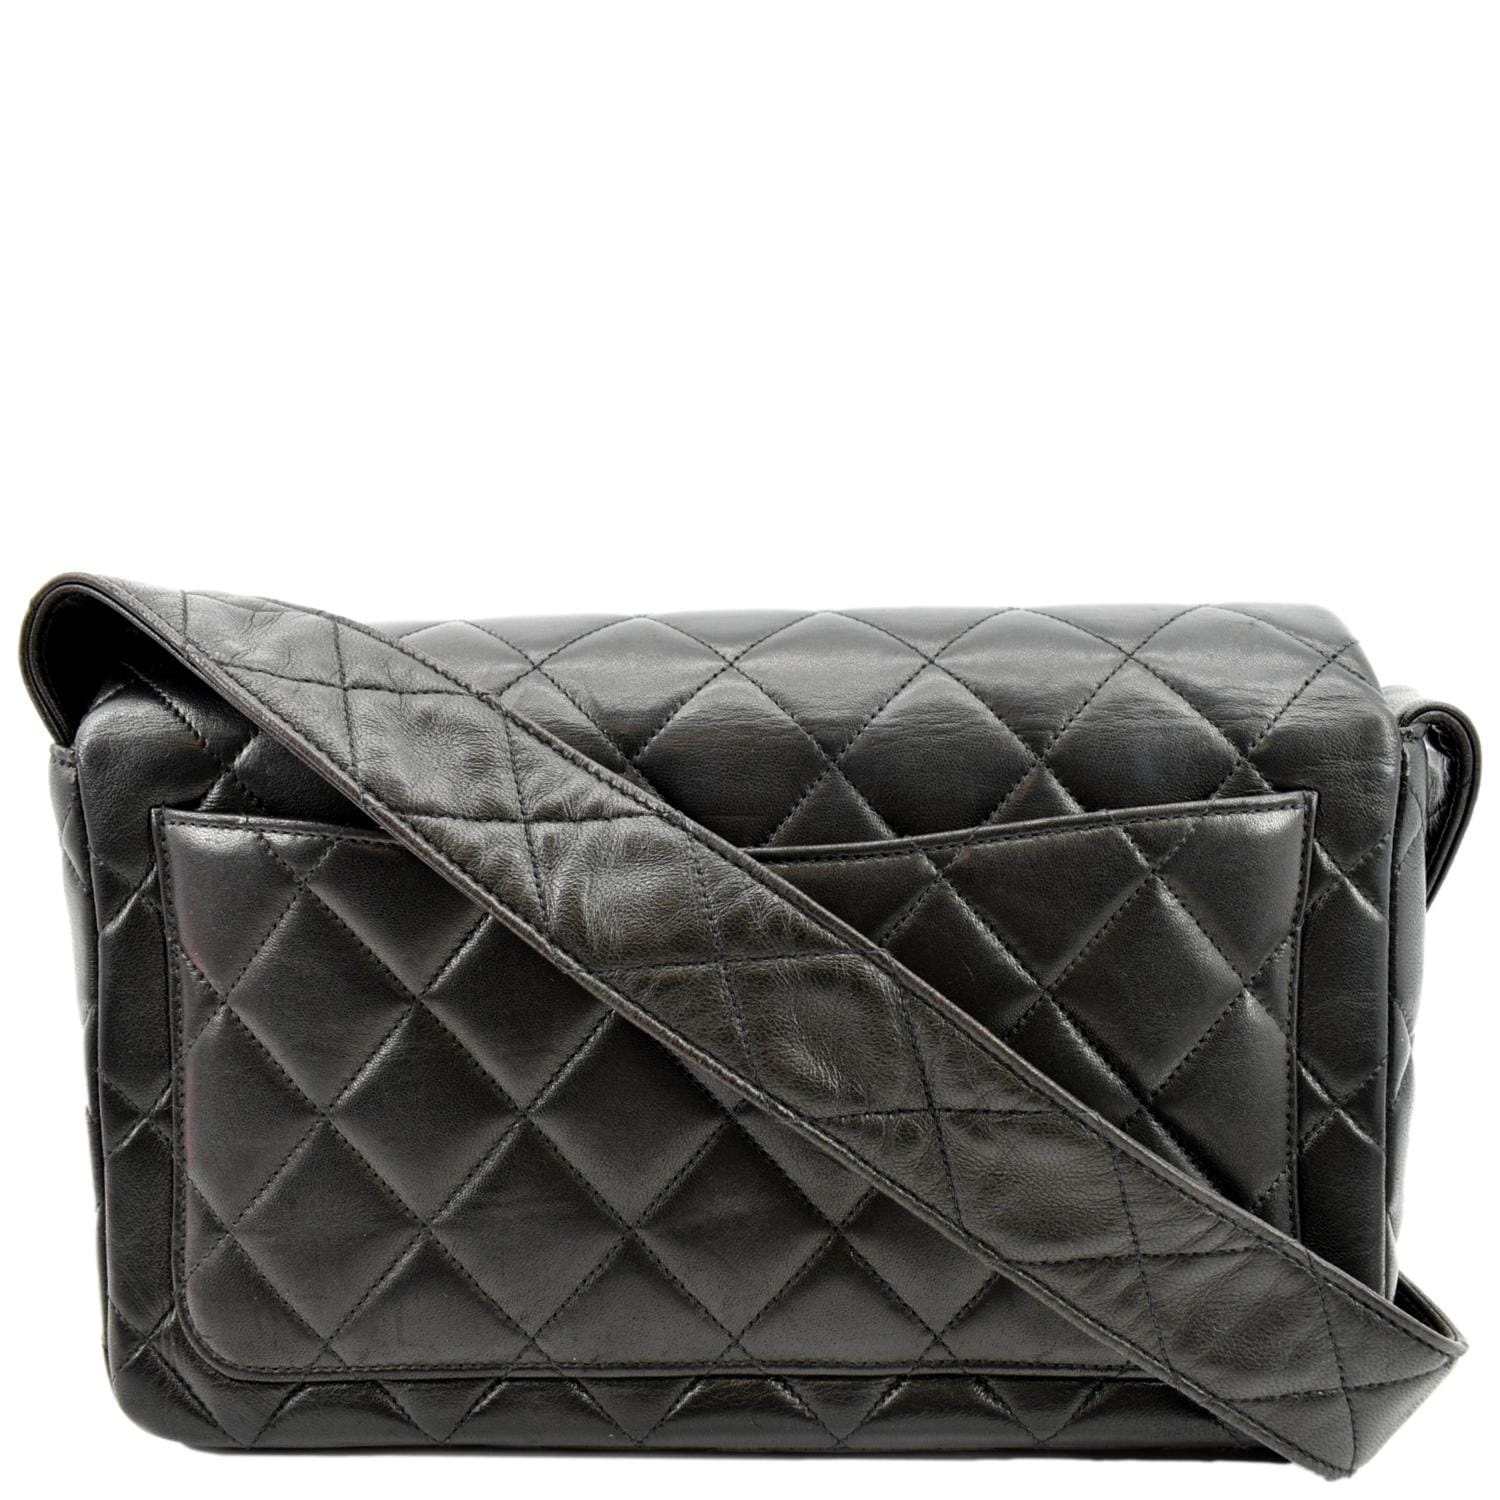 black leather chanel handbag vintage